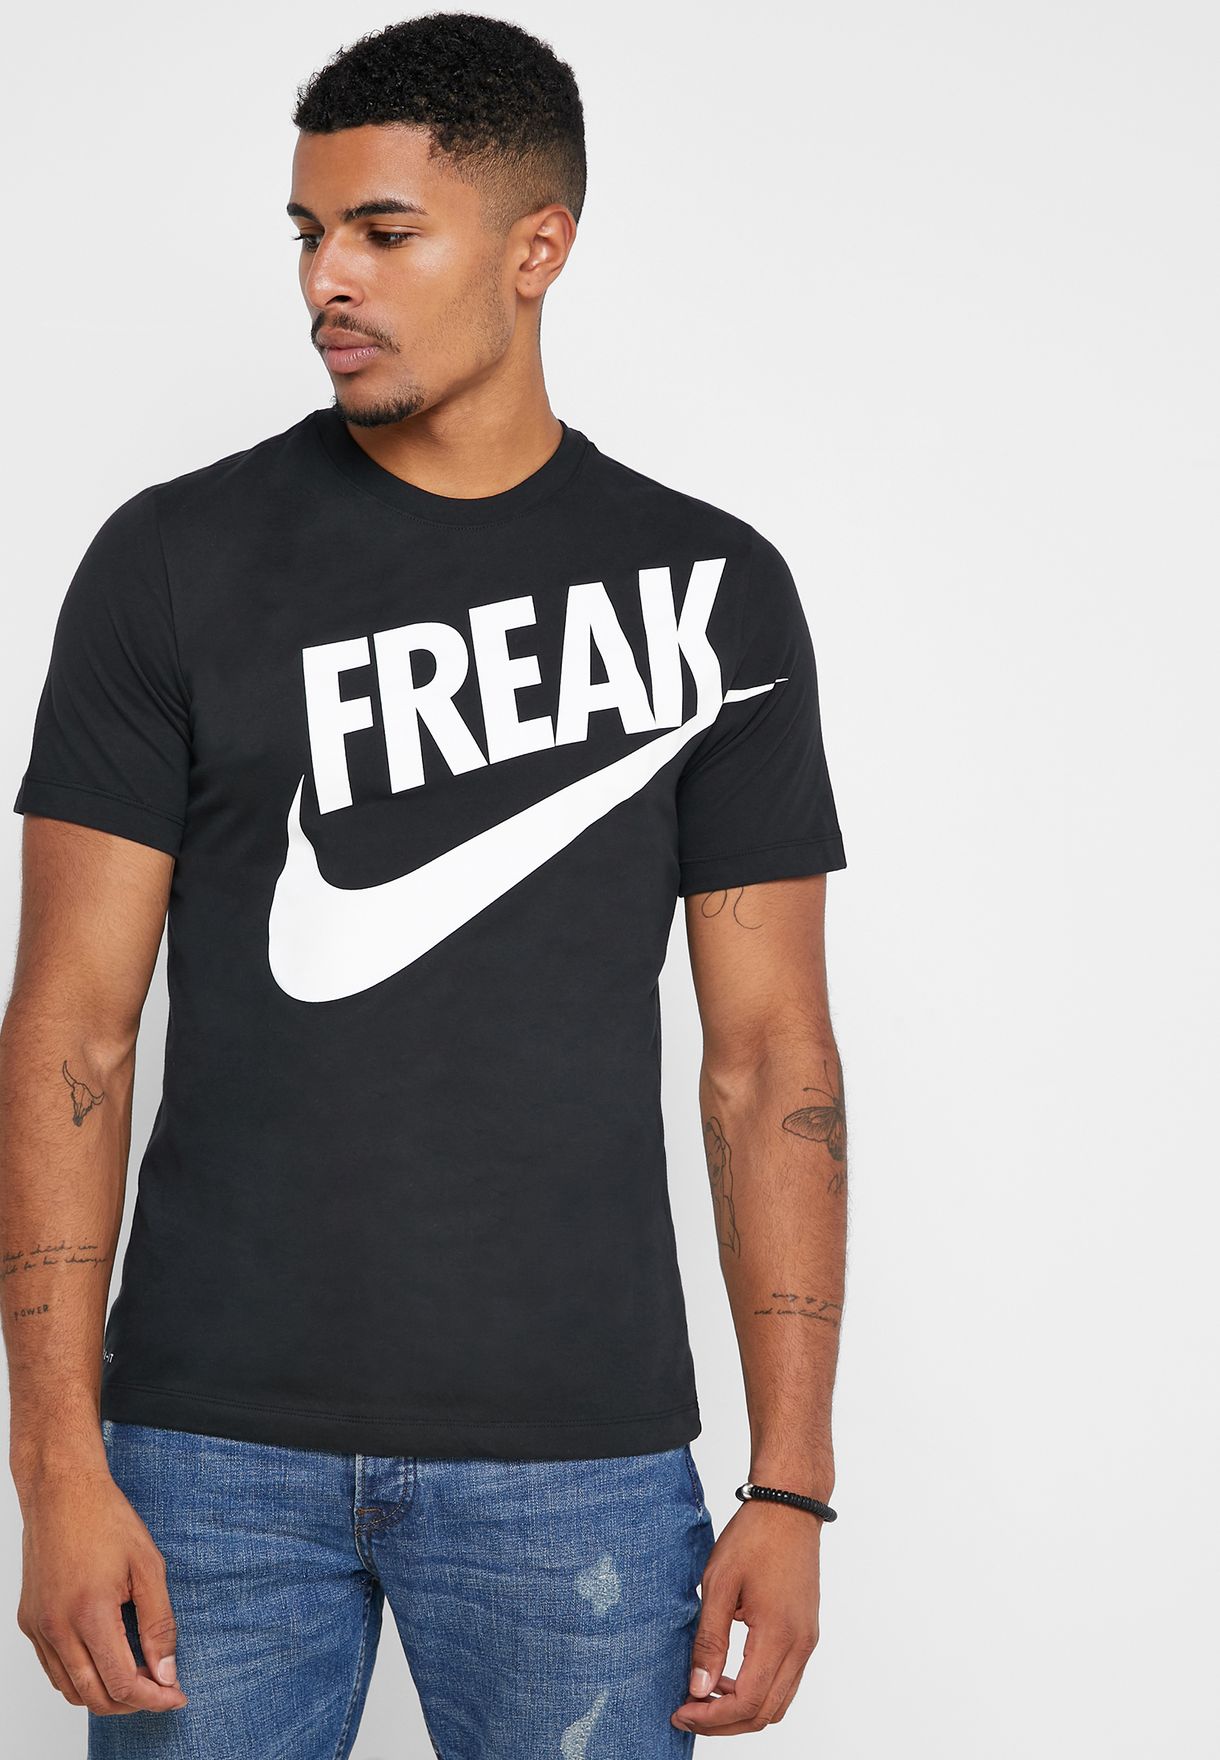 freak shirt